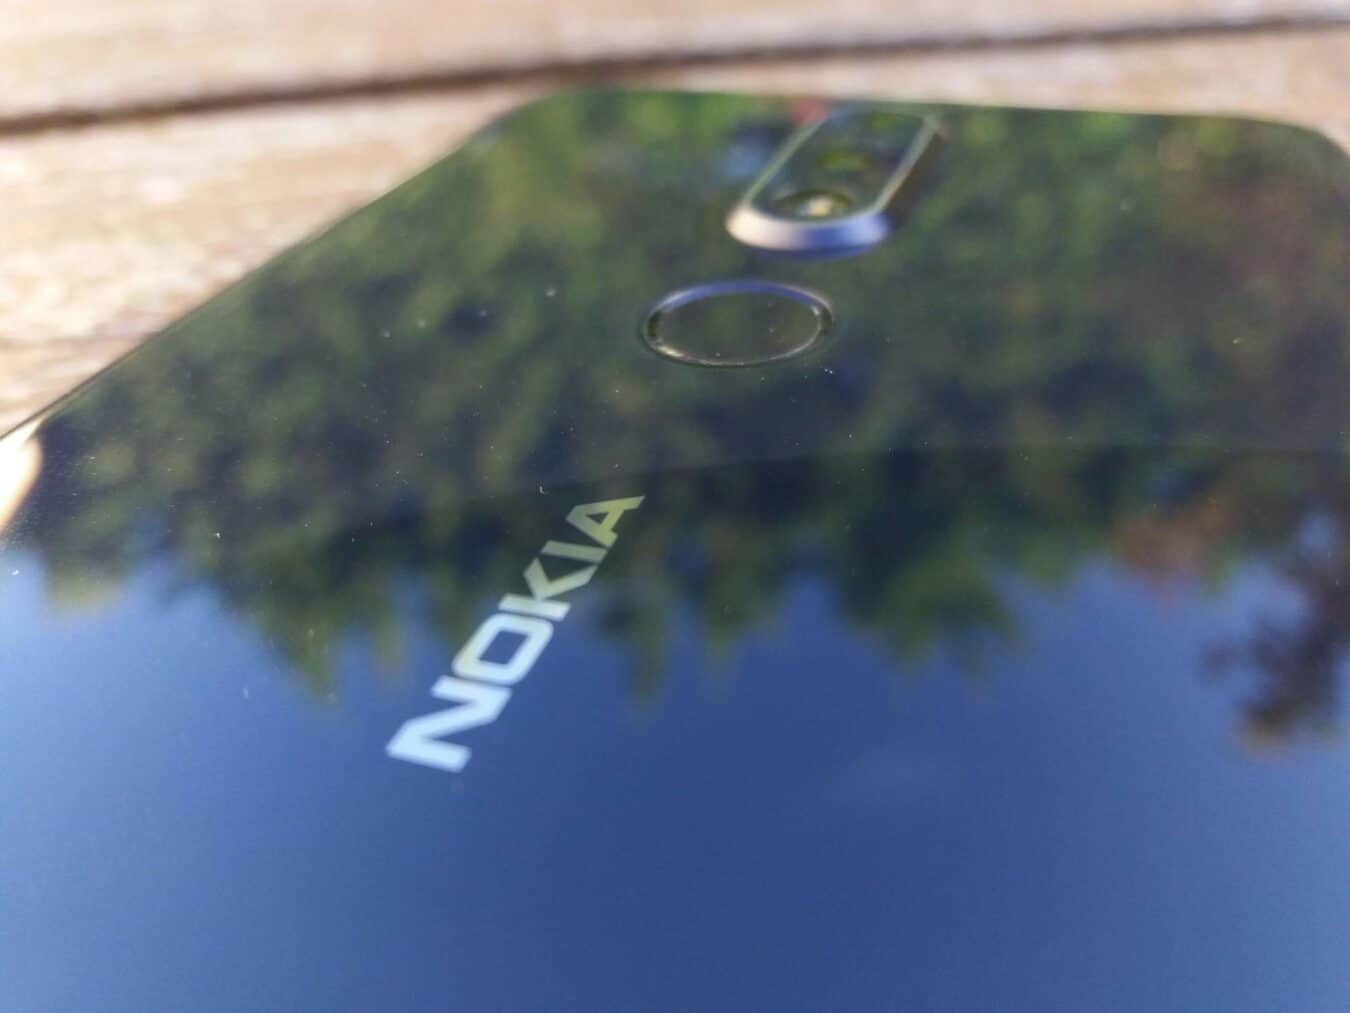 Nokia 7.1 20181102 103406 scaled Test – Nokia 7.1 : Le retour en force de Nokia ? nokia 7.1